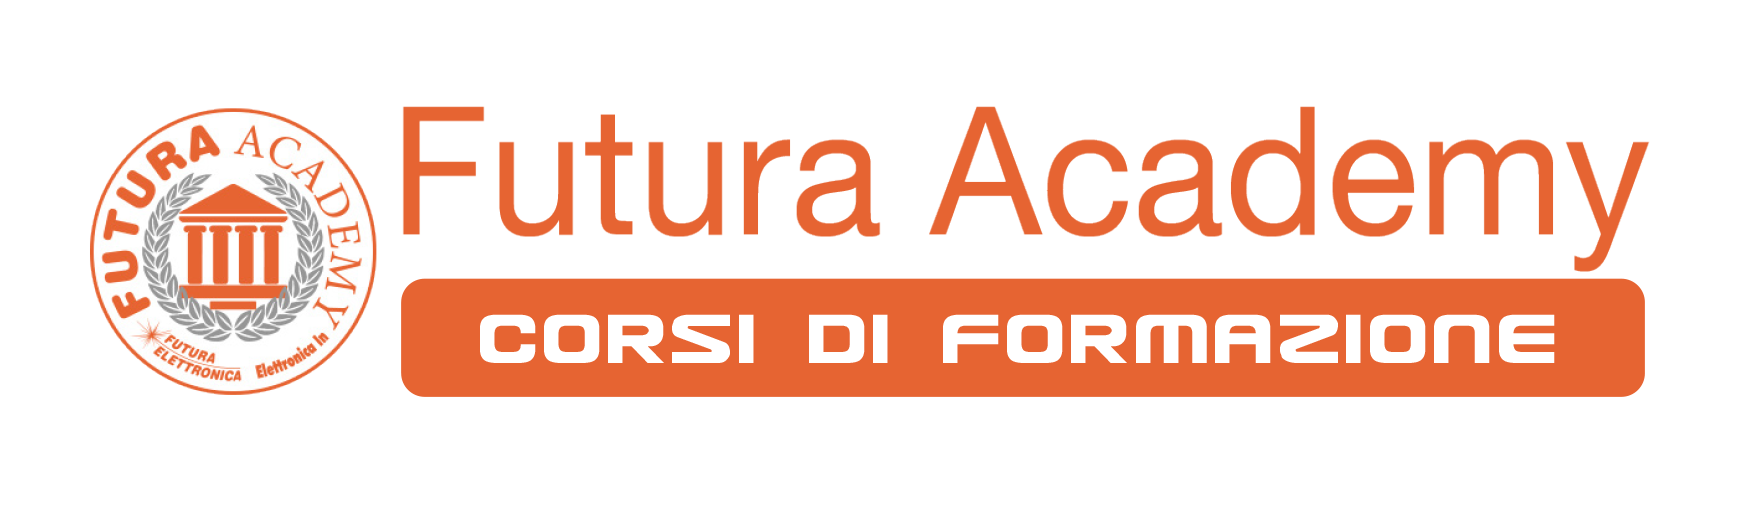 Corsi di elettronica by Futura Academy